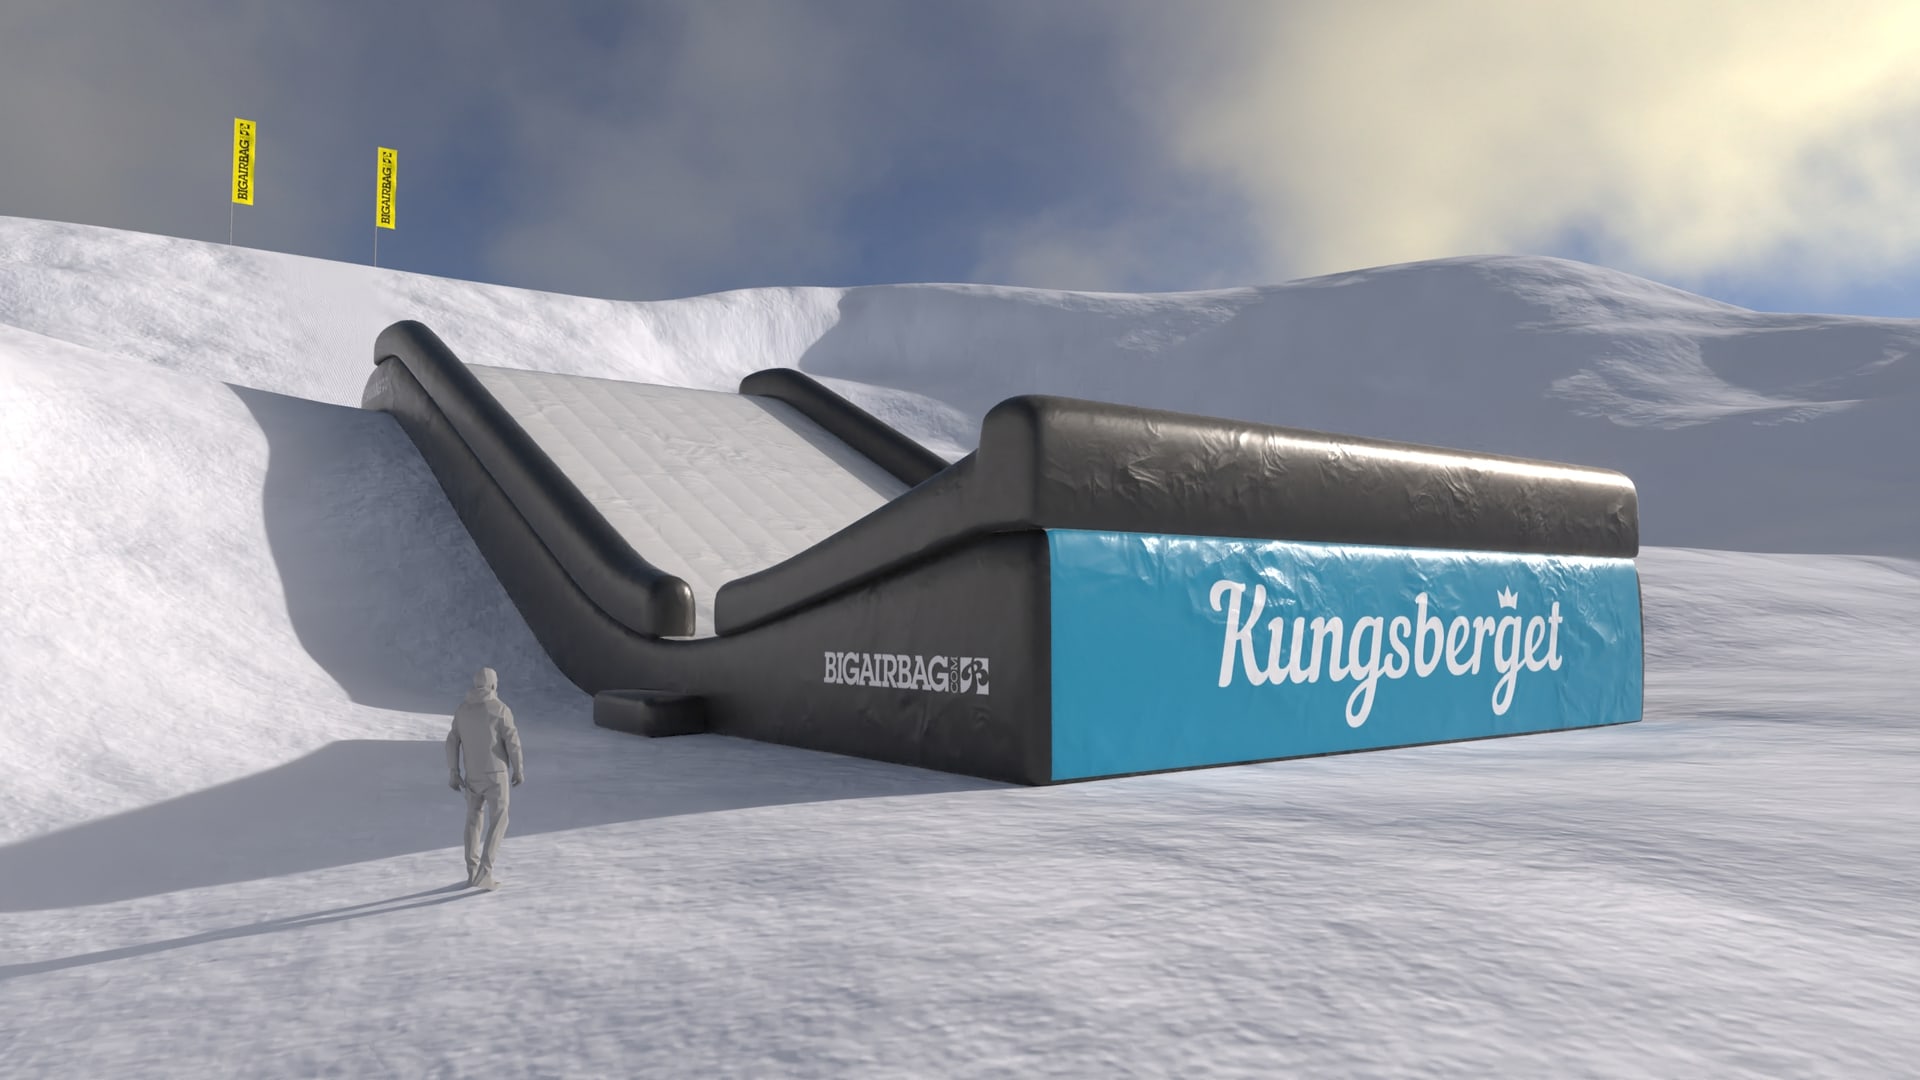 Landing airbag for ski resorts